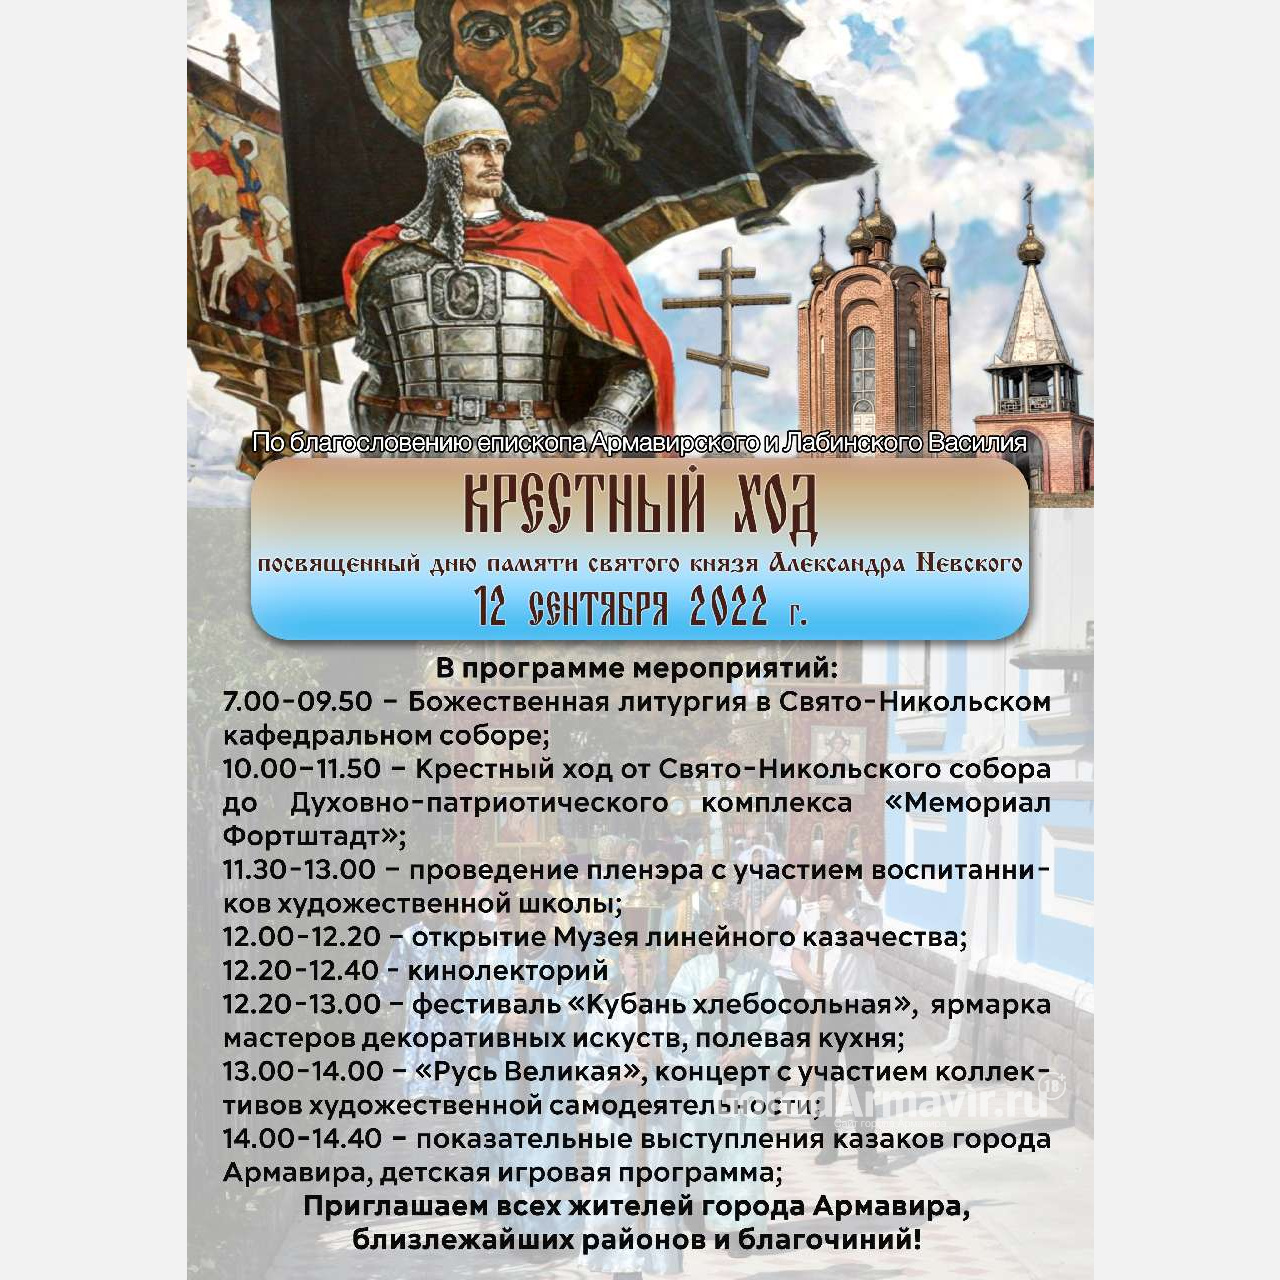 В Армавире 12 сентября пройдет крестный ход и открытие музея линейного казачества 